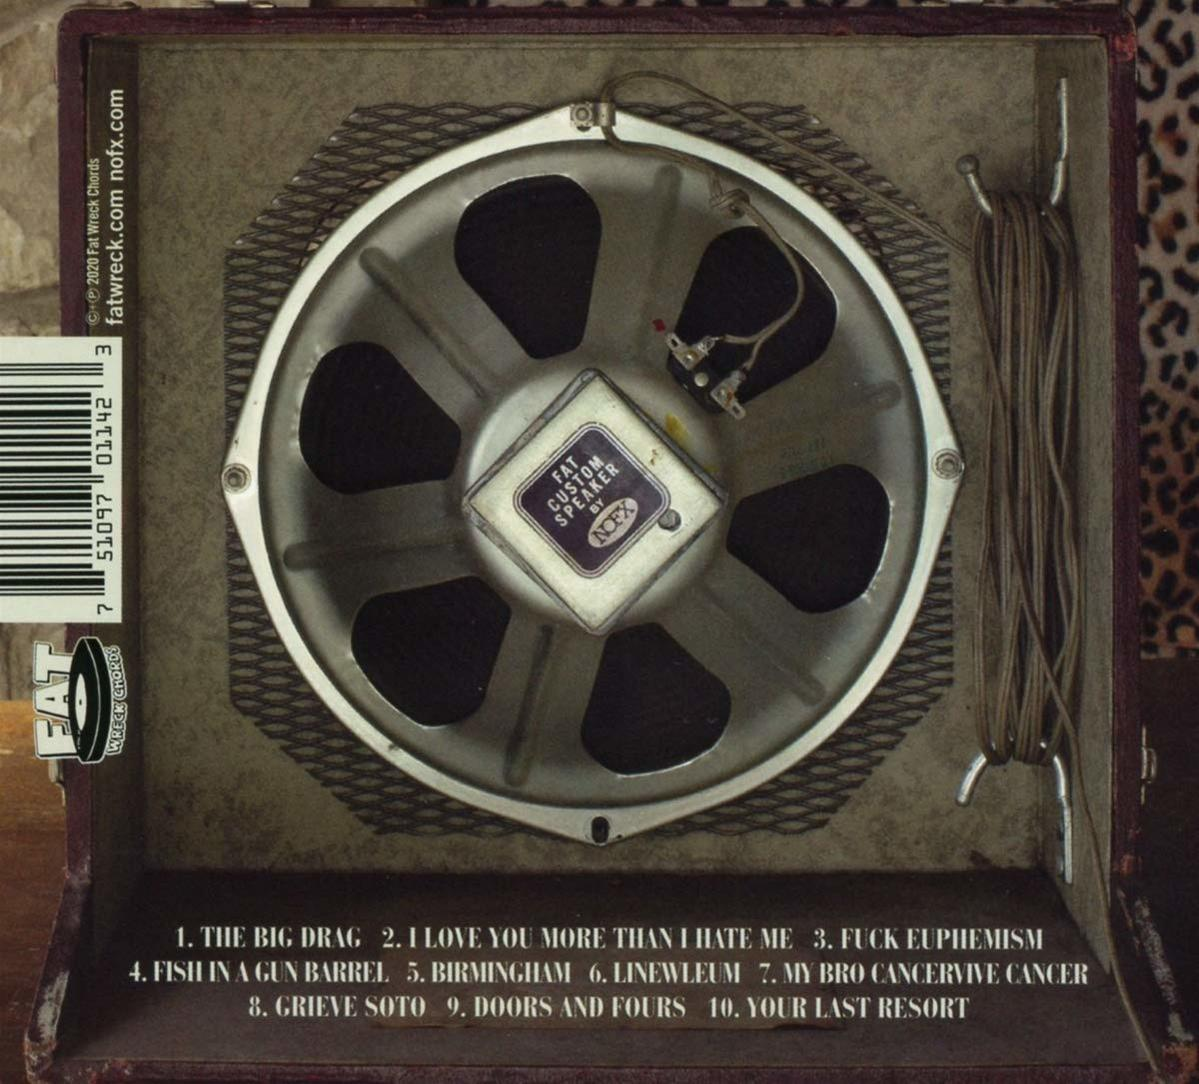 (CD) - Nofx SINGLE - ALBUM